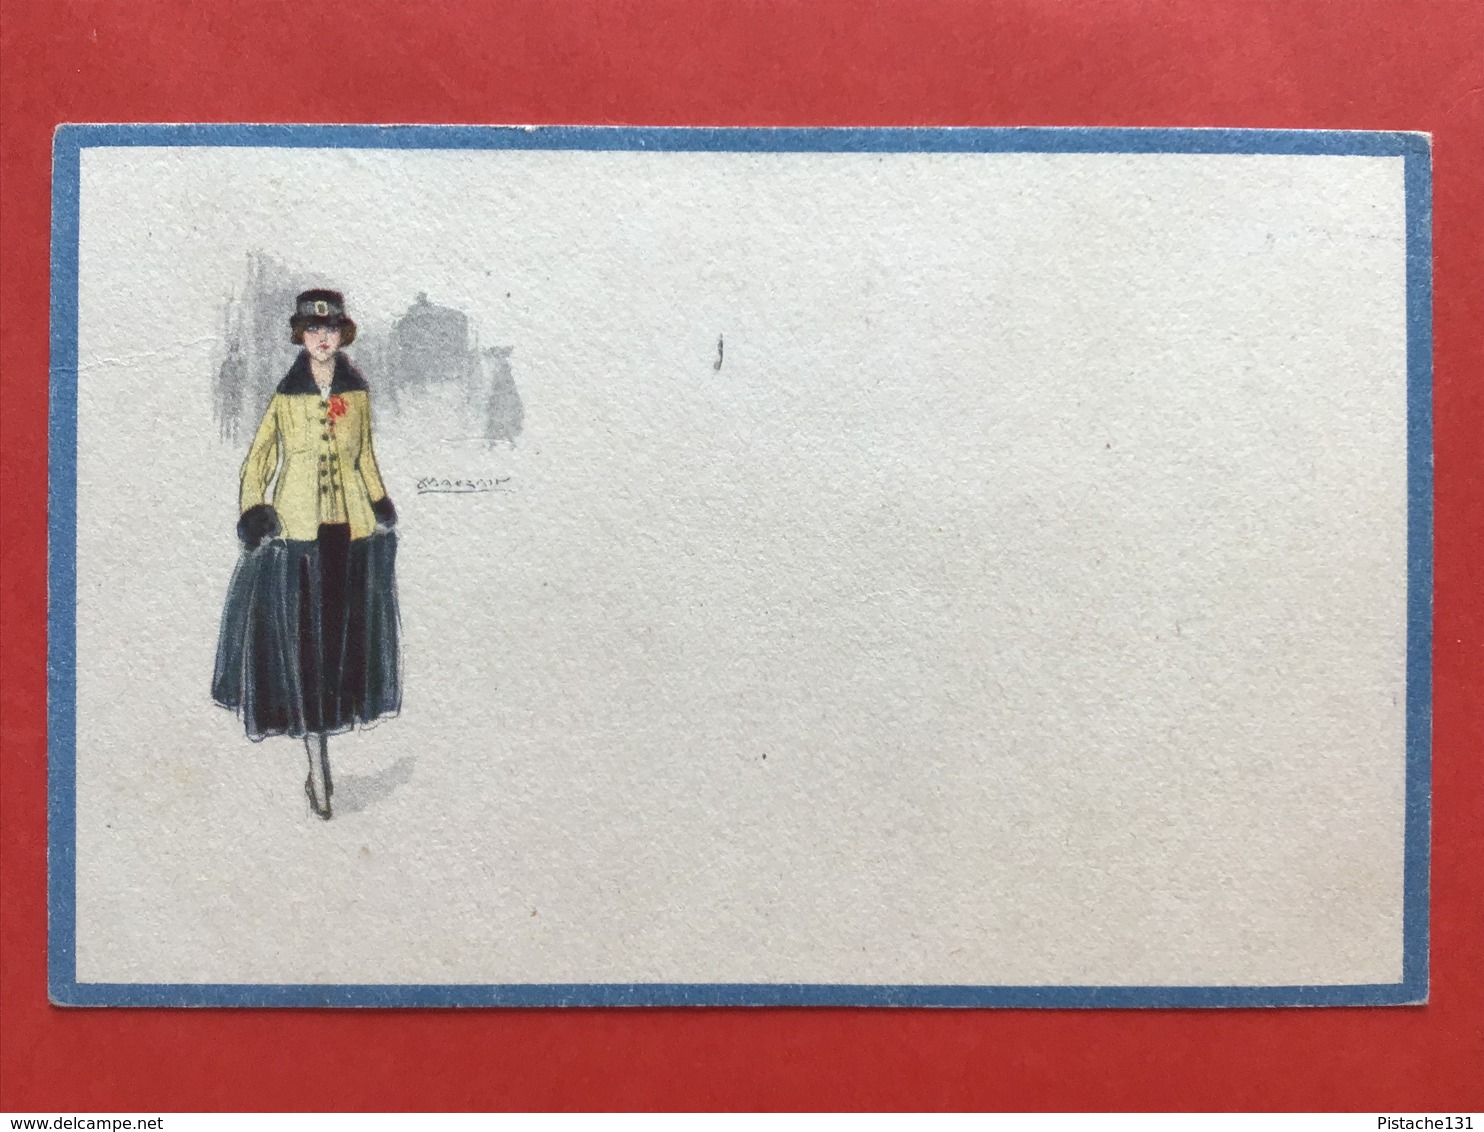 1921 - Illustrateur MAUZAN - DAME MET GELE JAS EN HOED - FEMME AU MANTEAU JAUNE ET CHAPEAU - Mauzan, L.A.